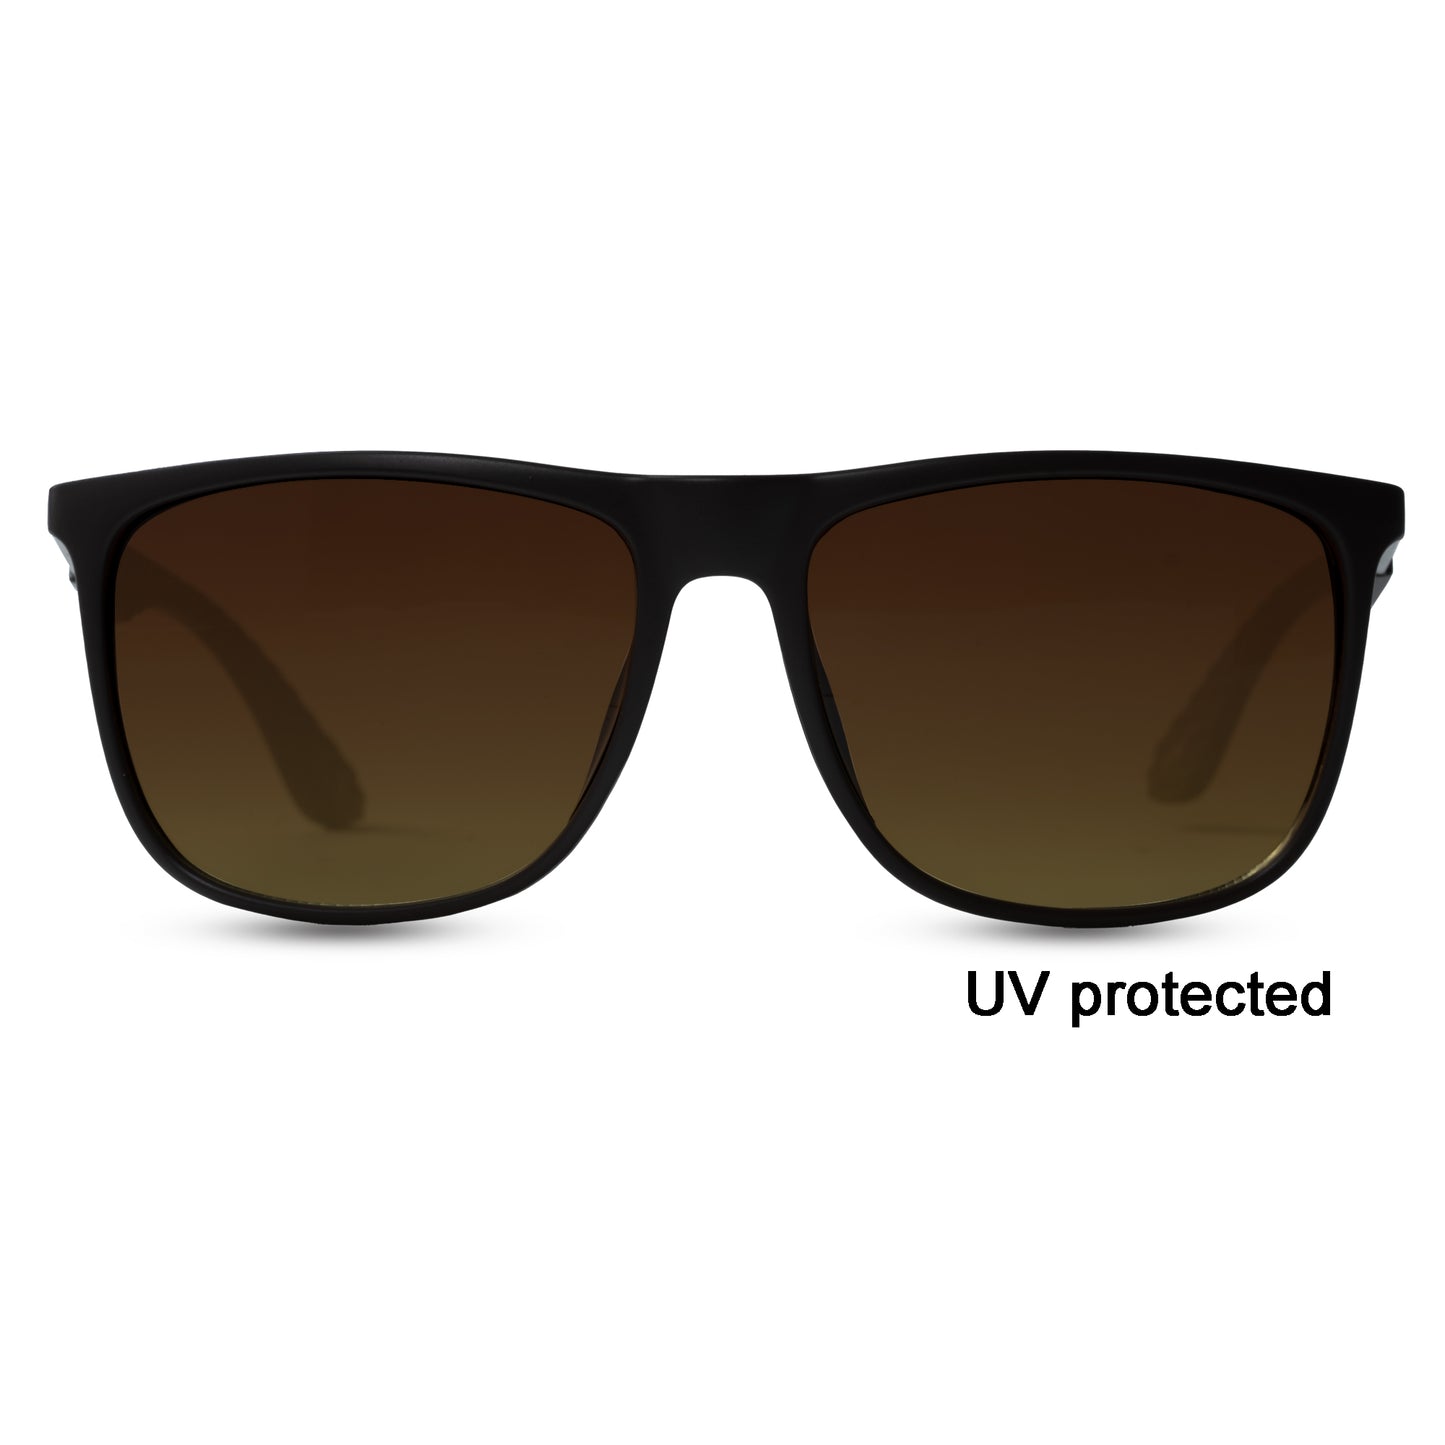 2.5 NVG UV Protected Brown Wayfarer Sunglasses